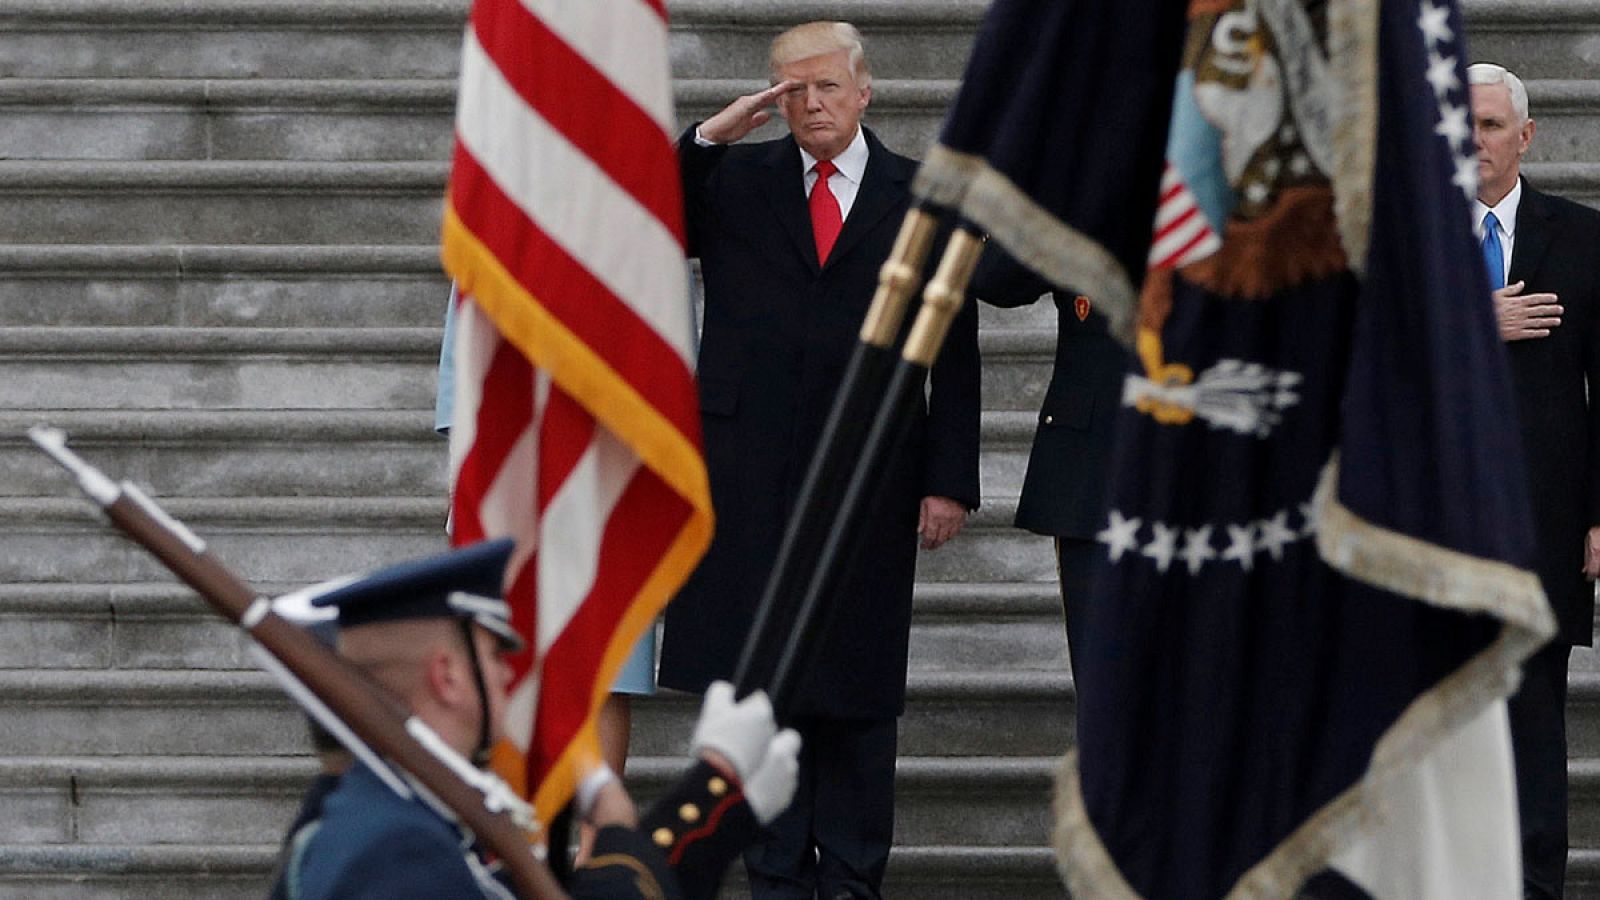 Imagen de unos militares desfilando frente a Donald Trump el 20 de enero de 2017.